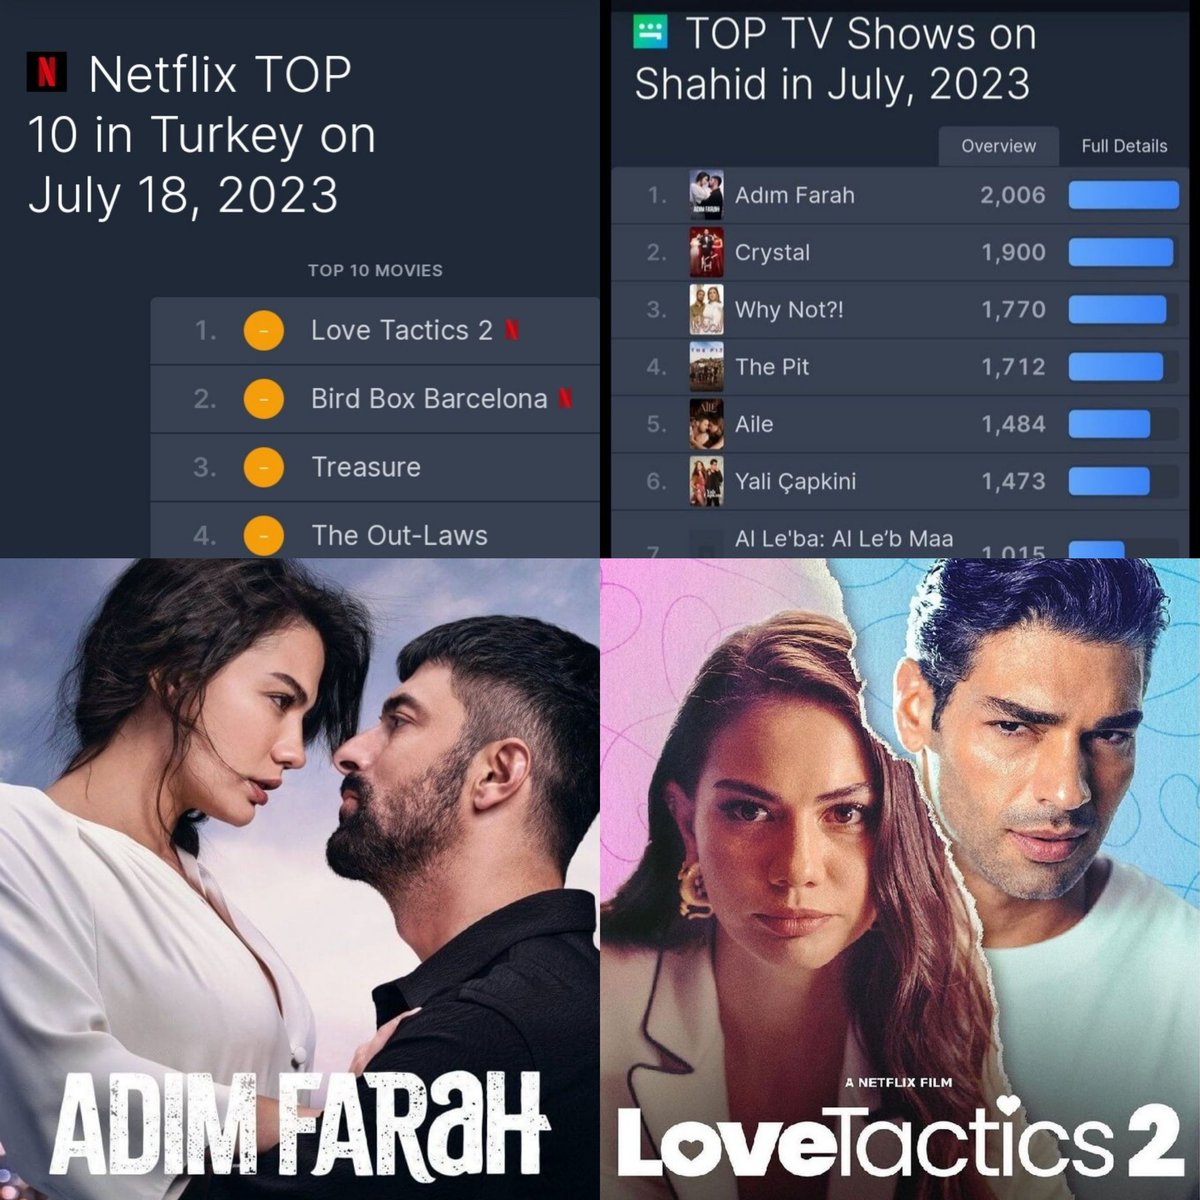 #LoveTactics2 & #AdımFarah
N°1 on Netflix and Shahid 
👇🥇🌏 #DemetÖzdemir #ŞükrüÖzyıldız #EnginAkyürek #AşkTaktikleri2